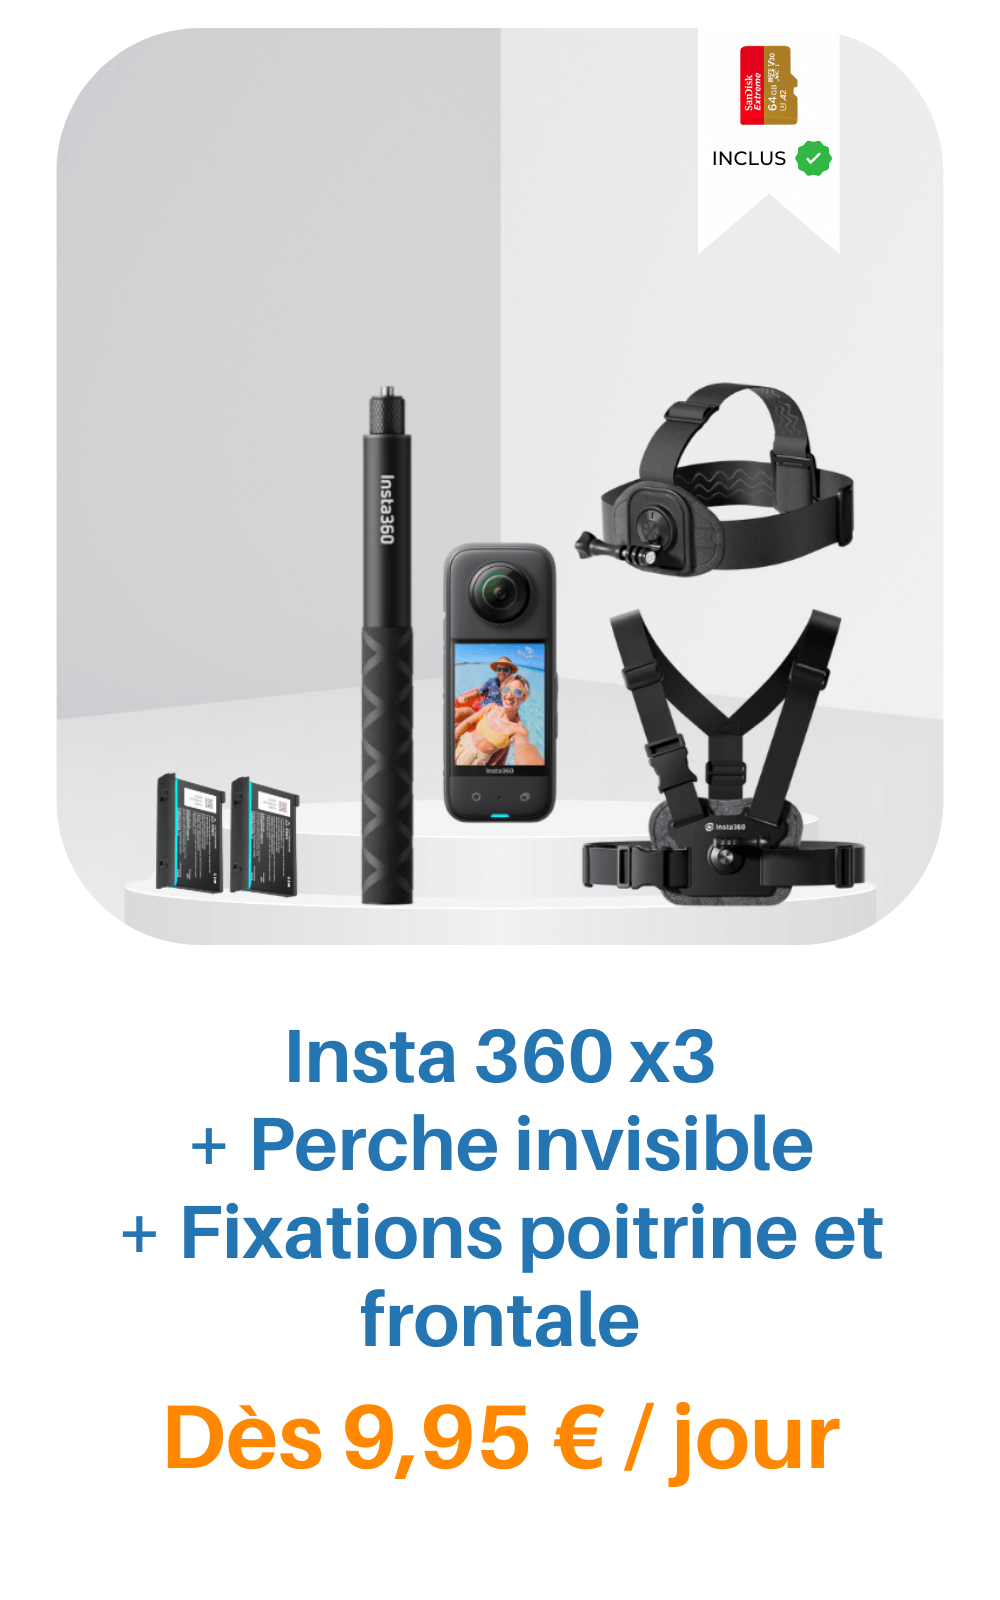 Location Insta 360 X3 dès 14,90€/jour - Livraison en France et